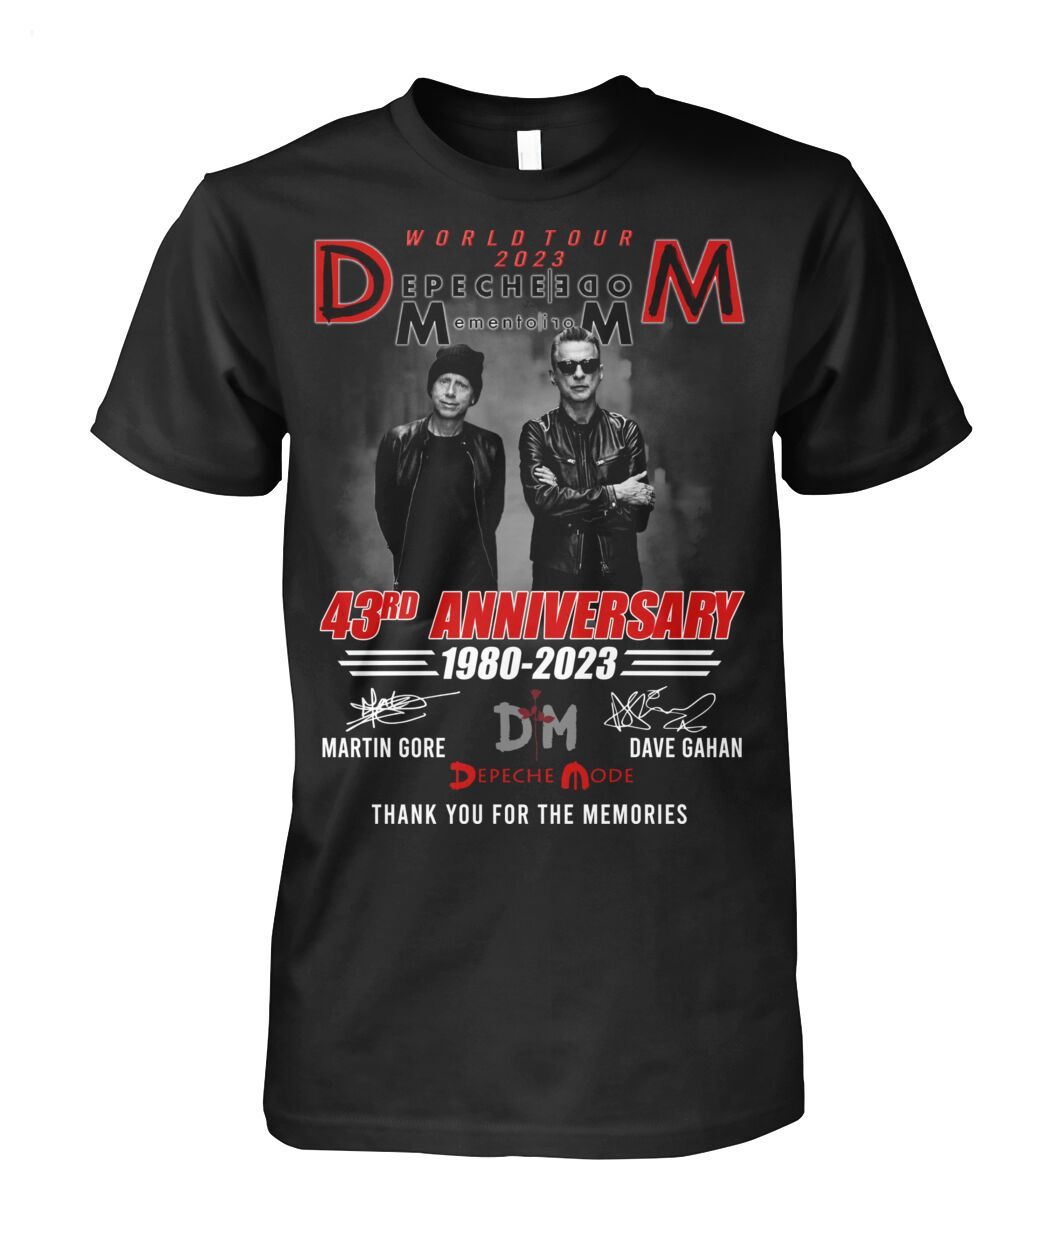 Depeche Mode Memento Mori Shirt World Tour 2023 T-Shirt Classic